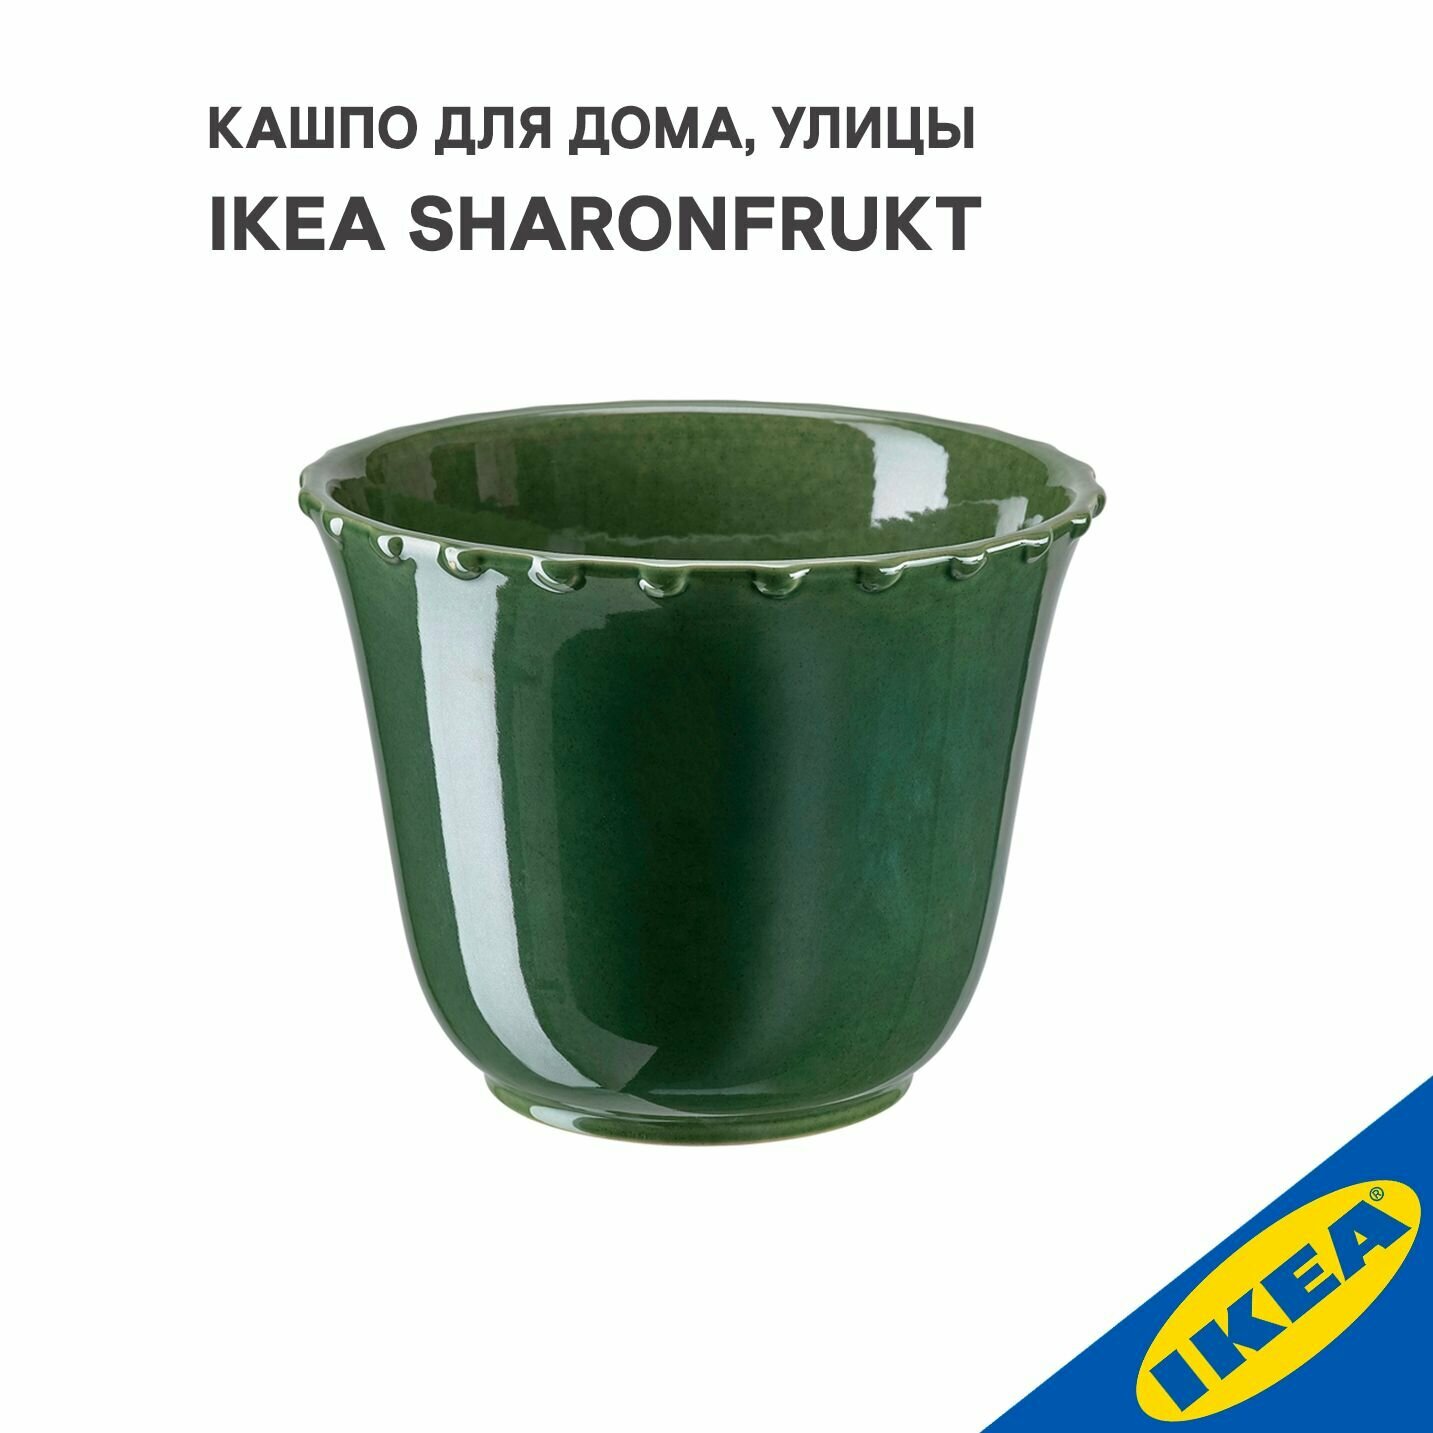 Кашпо для дома, улицы IKEA SHARONFRUKT шаронфрукт, 12x14 см, зеленый